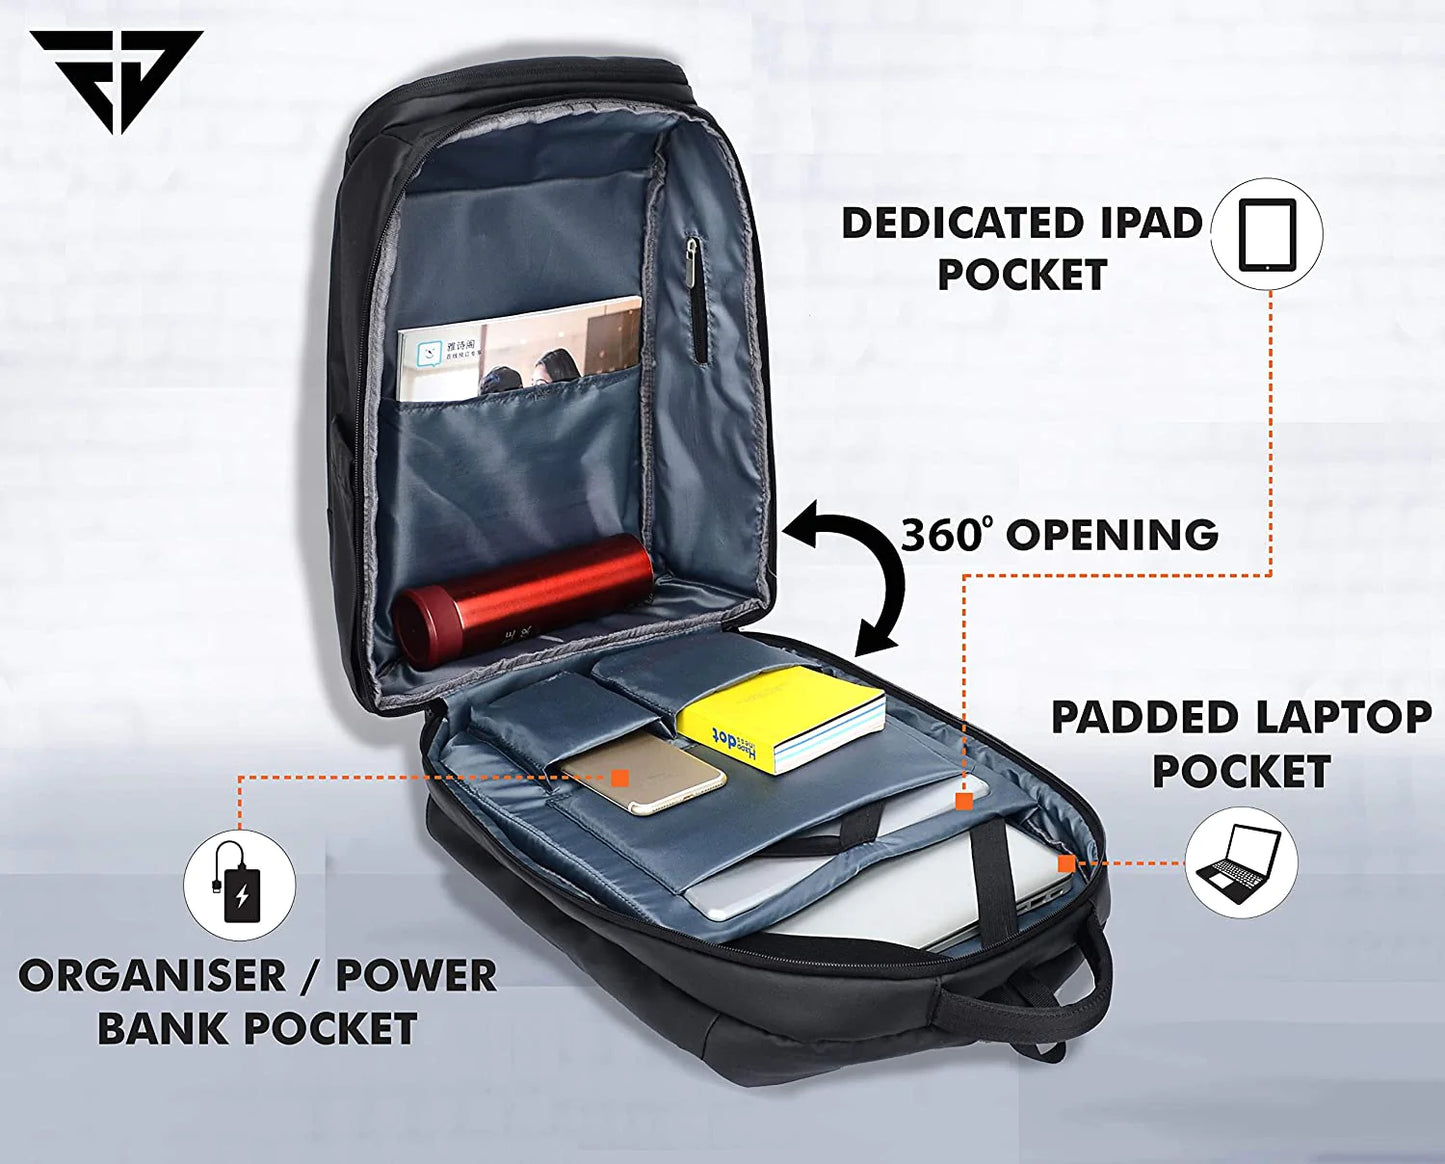 Fur Jaden 30L Black Laptop Backpack